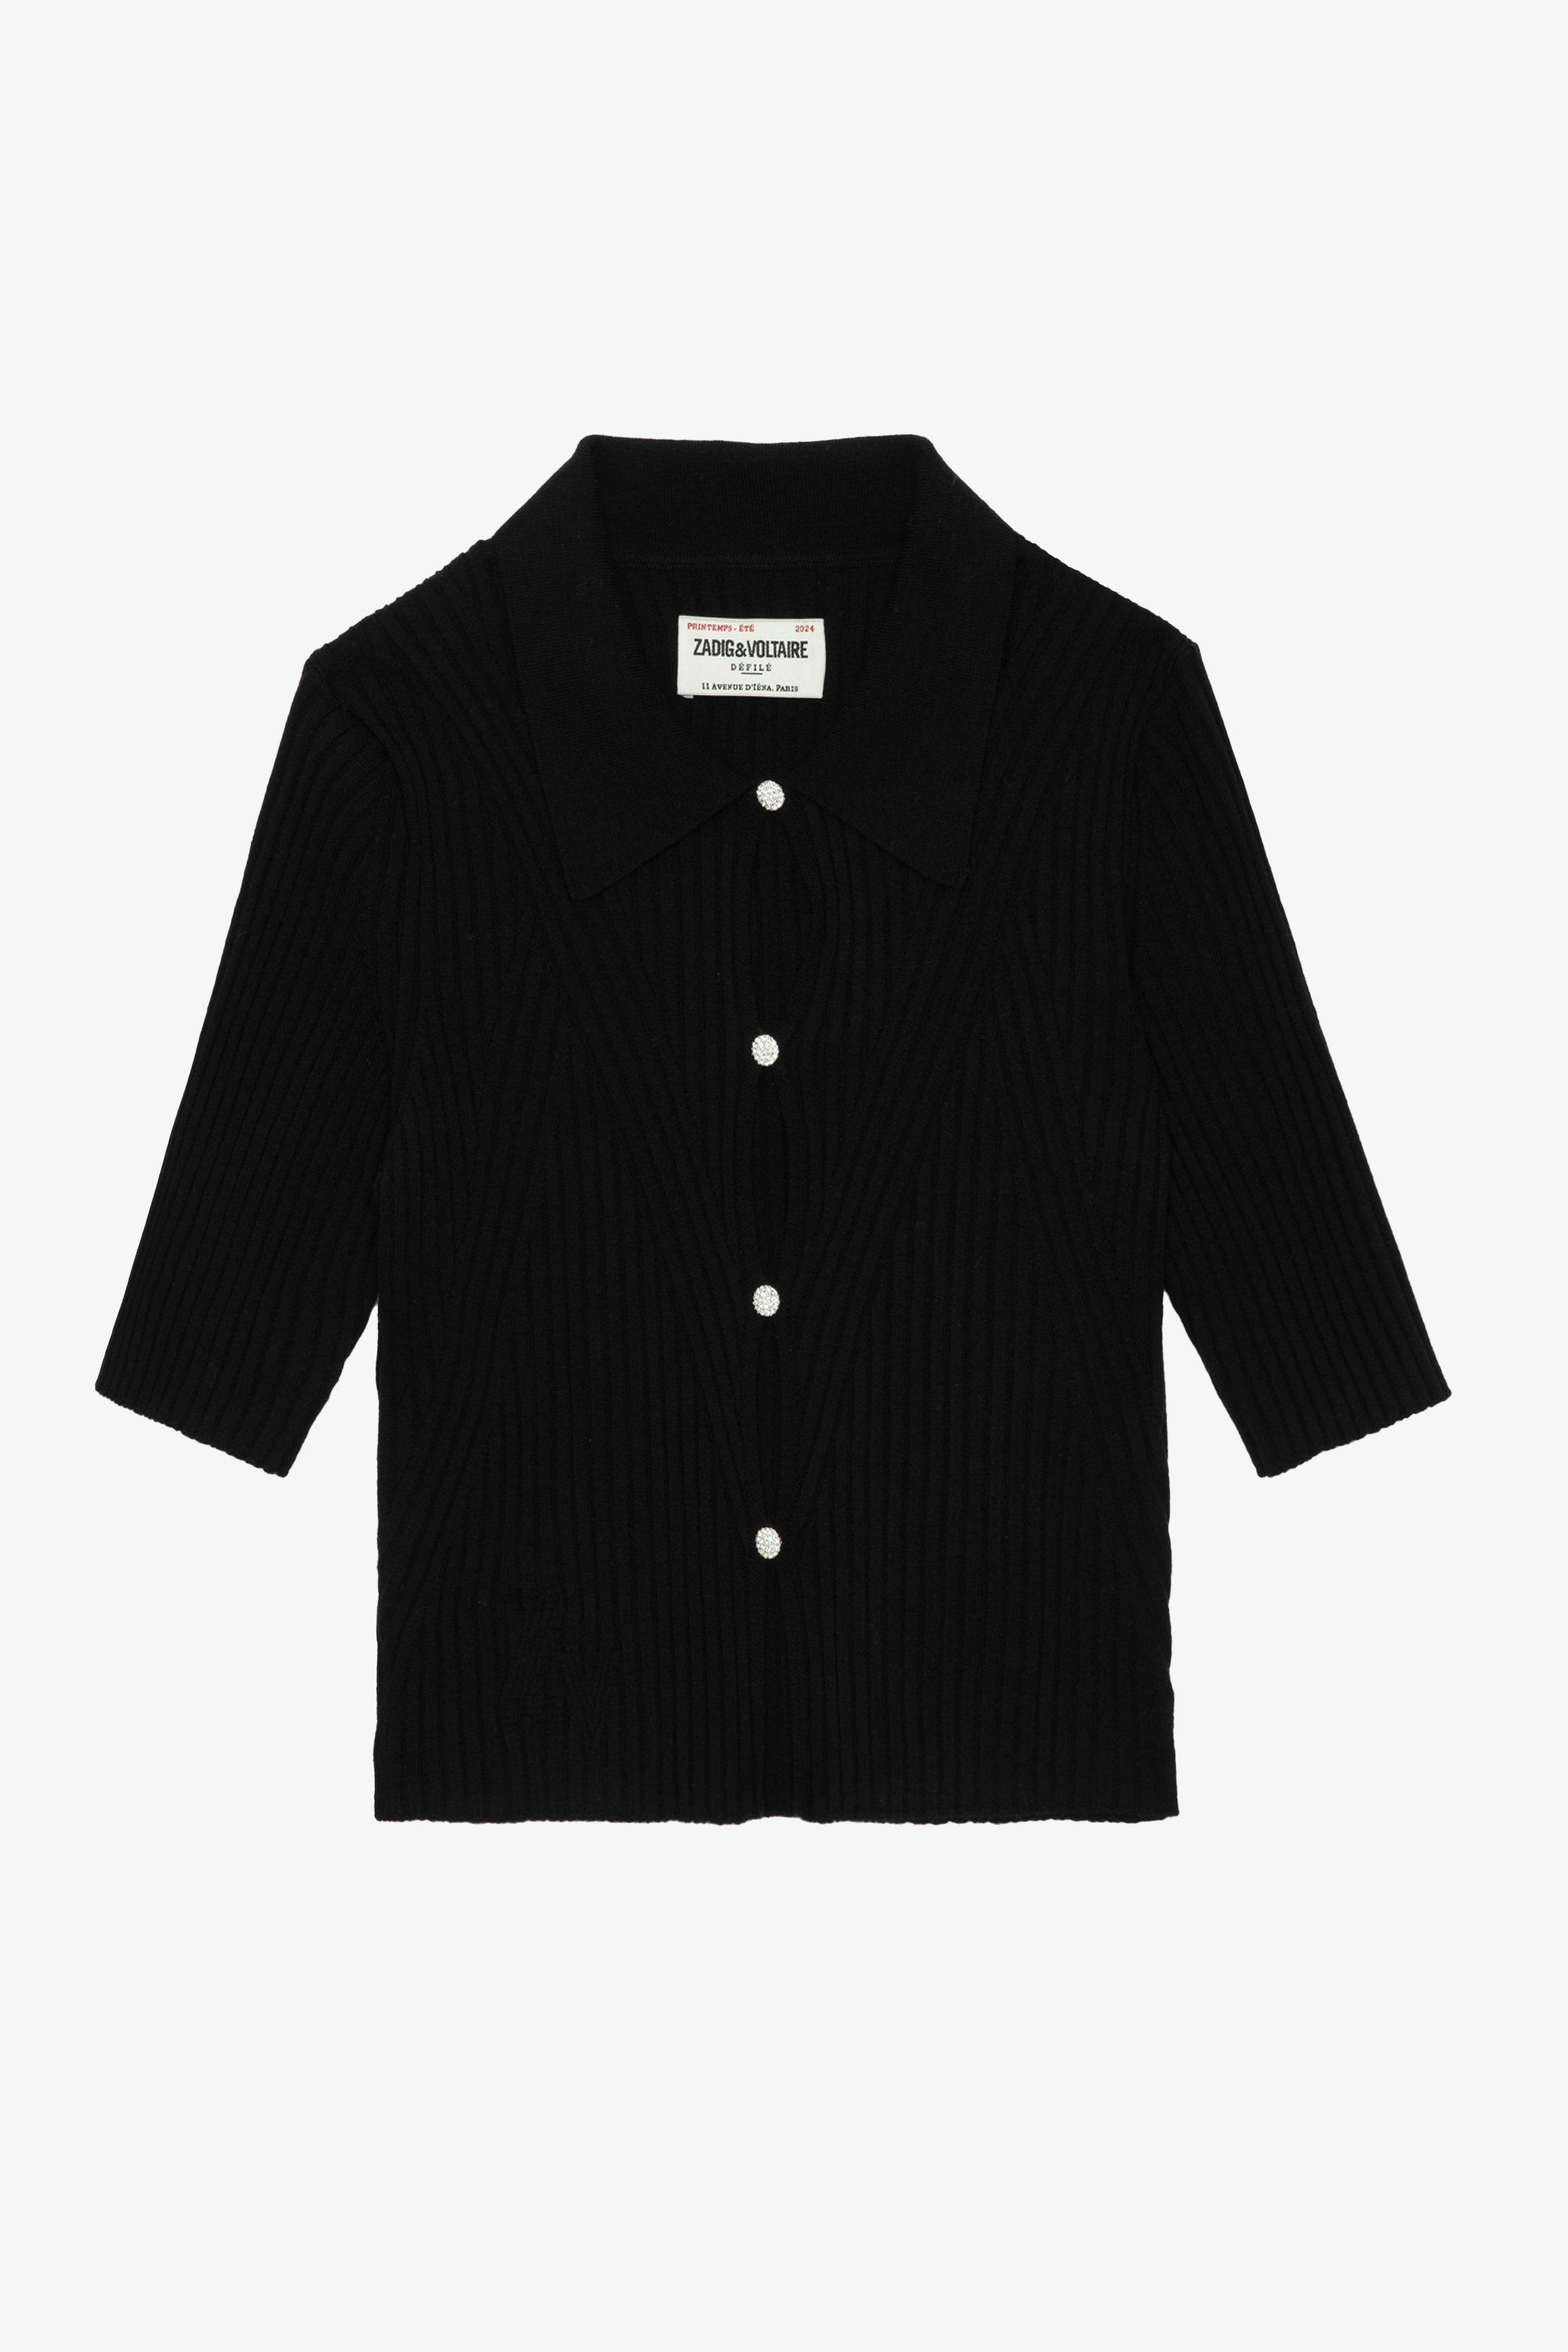 Top Lyam - Top corto negro de lana merina con cuello de camisa, mangas cortas, botones de bisutería con strass y alas en la espalda.